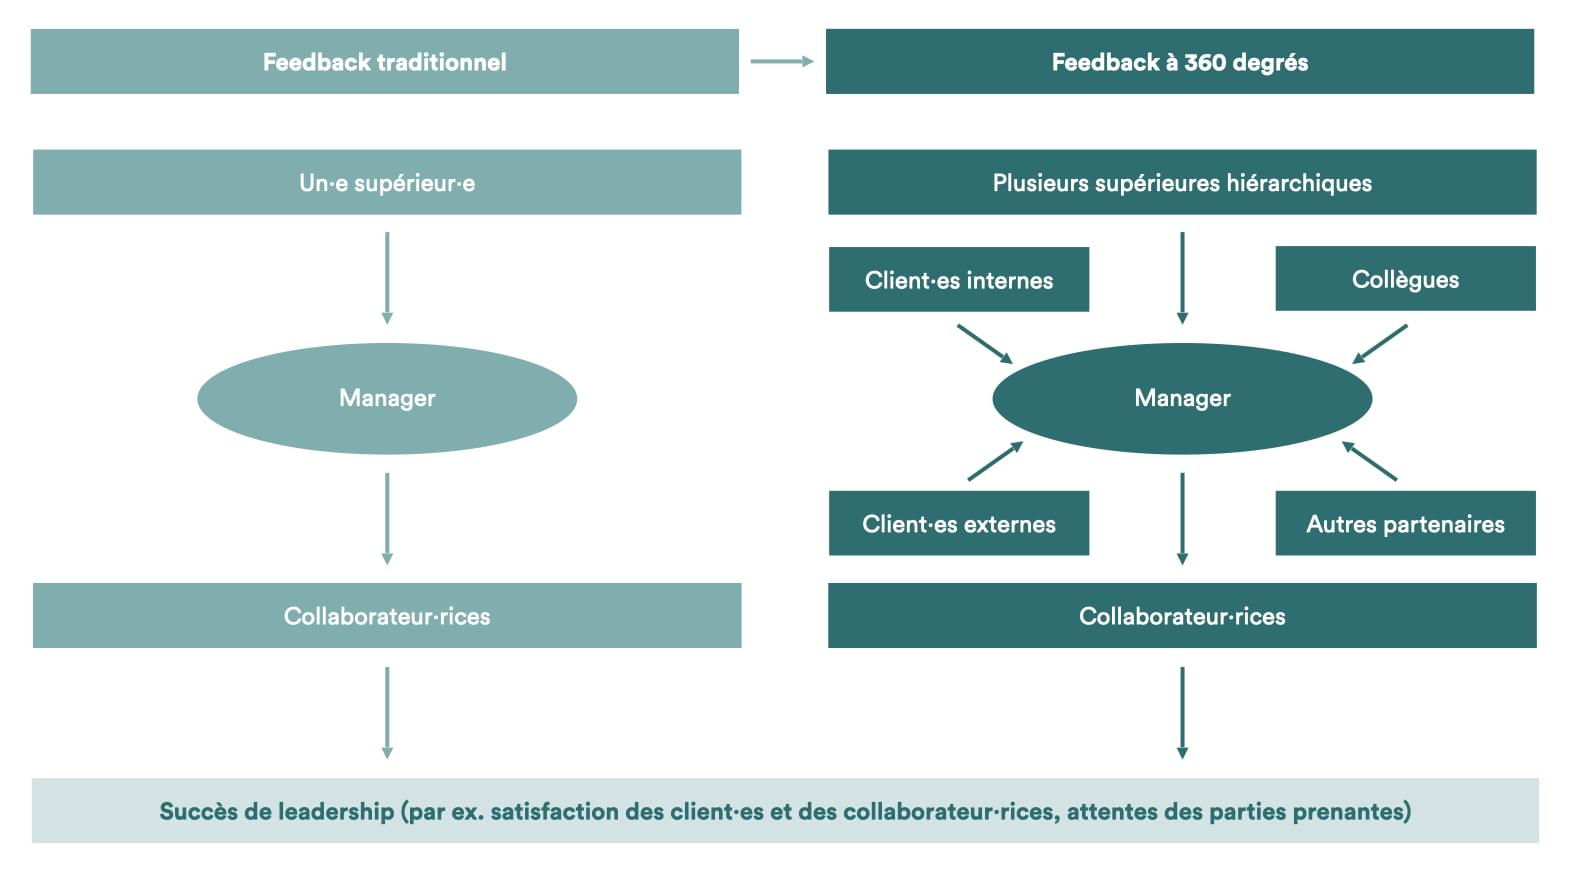 Comparaison entre feedback traditionnel et feedback à 360 degrés